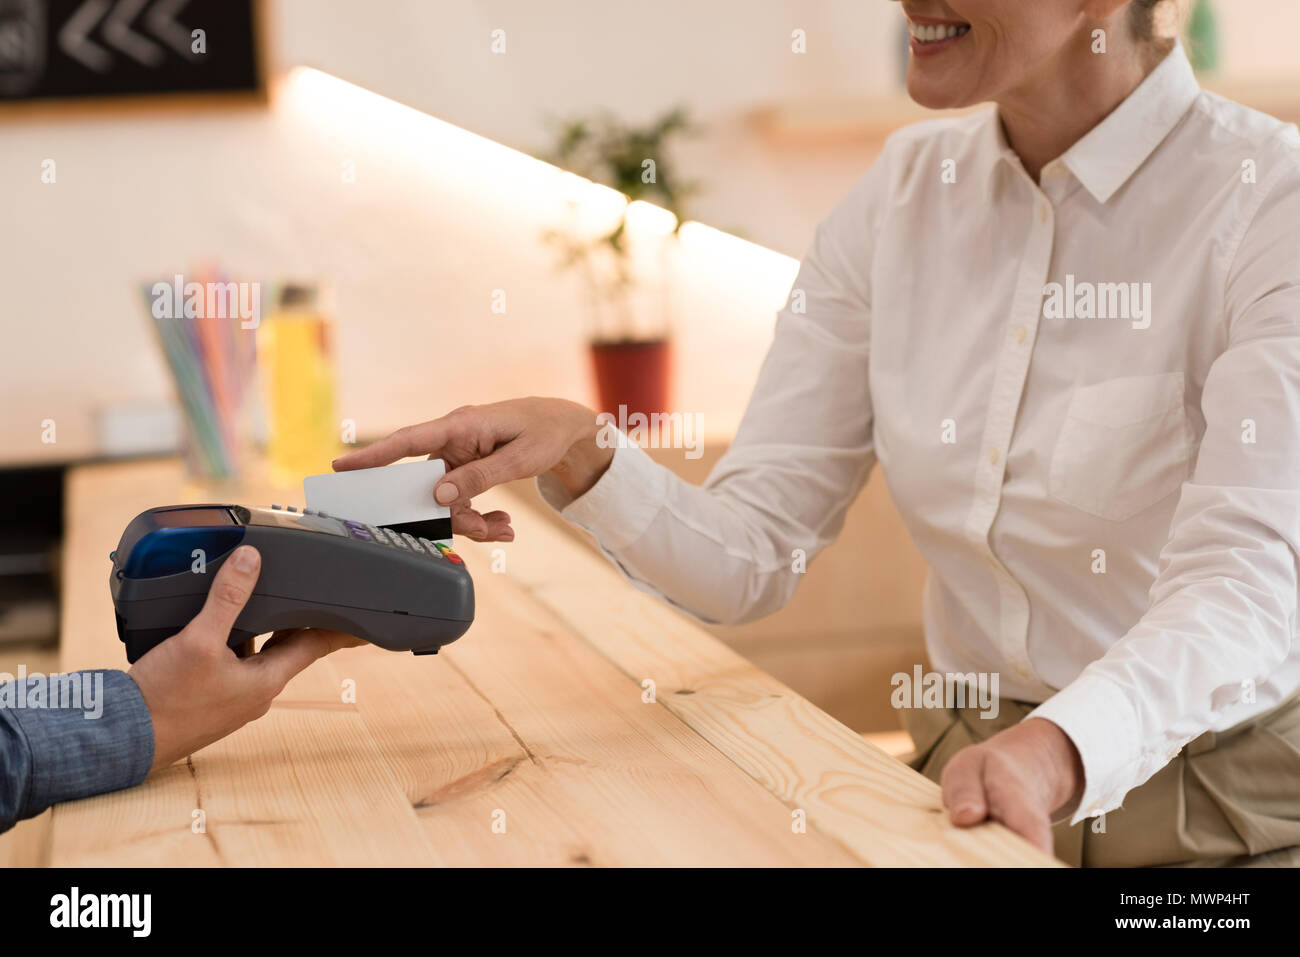 Vue partielle de smiling woman making paiement avec carte de crédit au cafe Banque D'Images